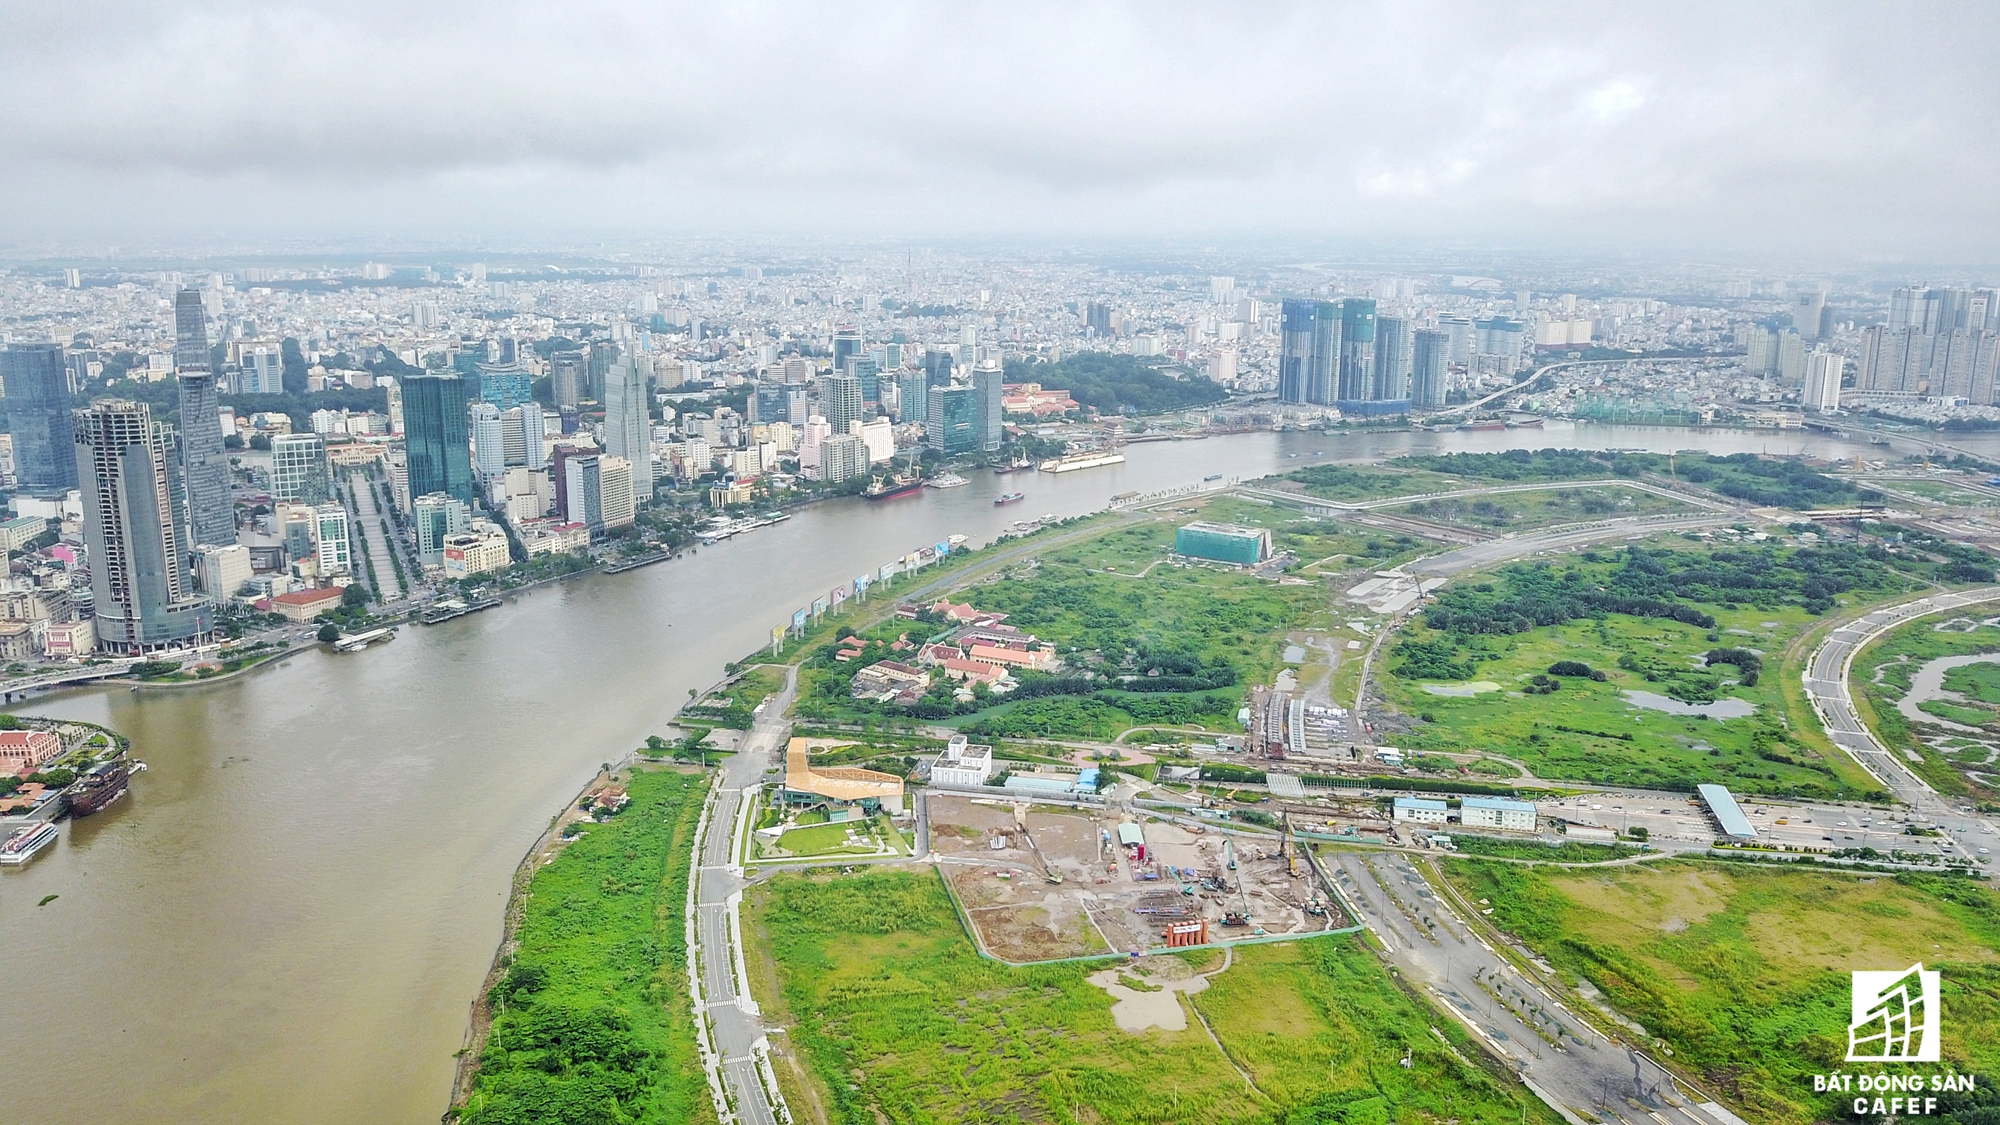 
Hai bờ sông Sài Gòn hiện là một đại công trường các dự án cao ốc. Sắp tới sẽ có 4 cây cầu lớn kết nối Thủ Thiêm với trung tâm TP.HCM, giúp tiếp tục bùng nổ dự án cao cấp

 
